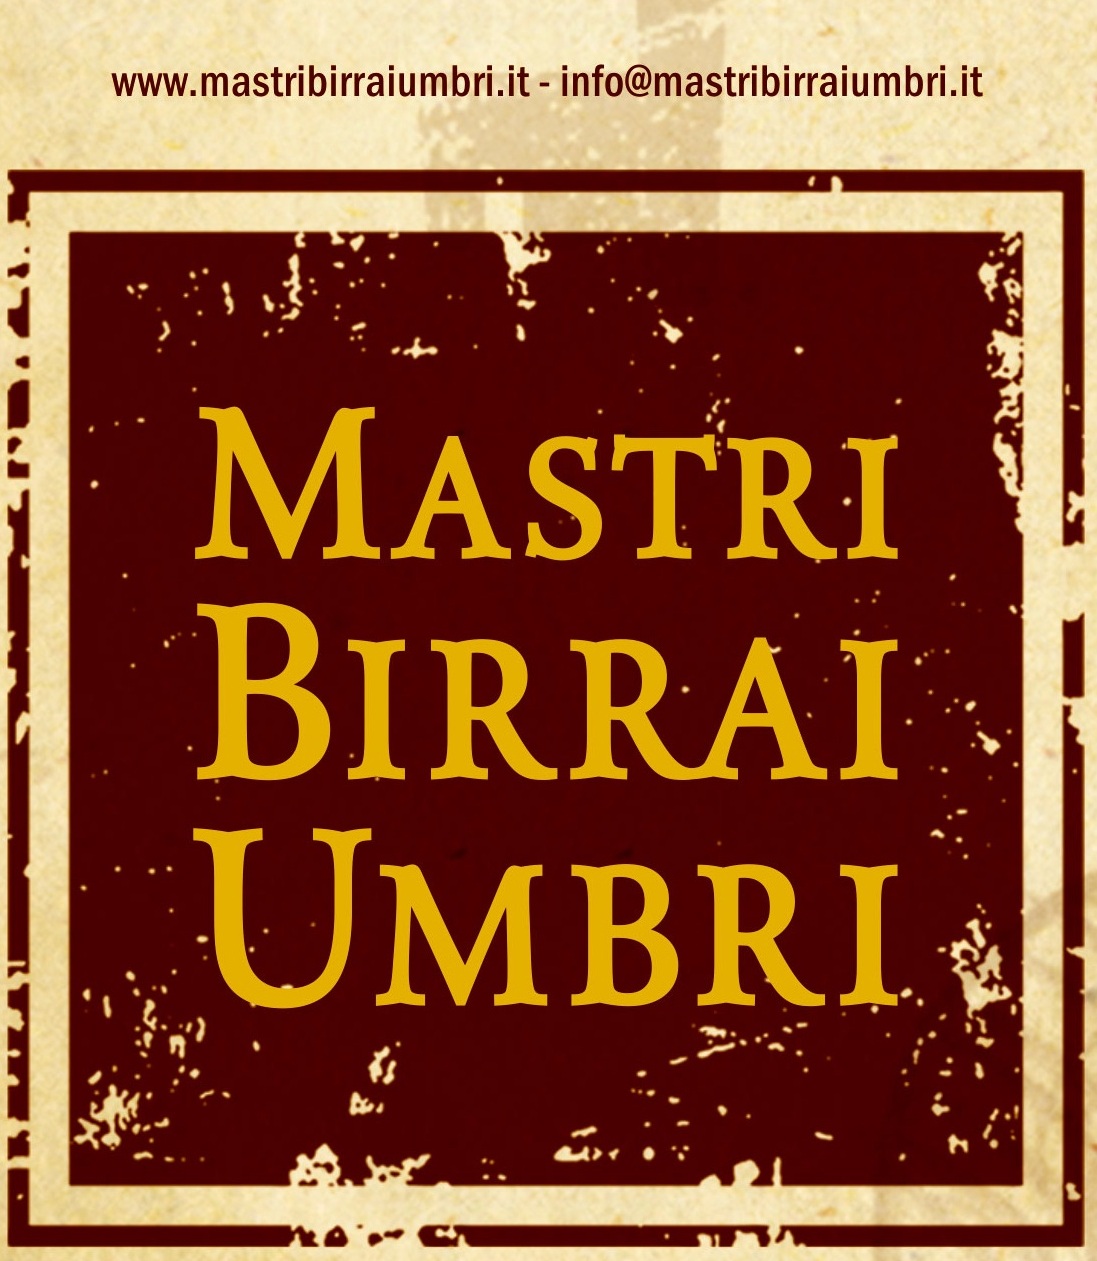 Dall’8 al 10 novembre all’Umbriafiere di Bastia Mastri Birrai Umbri di scena al “Birra Show”